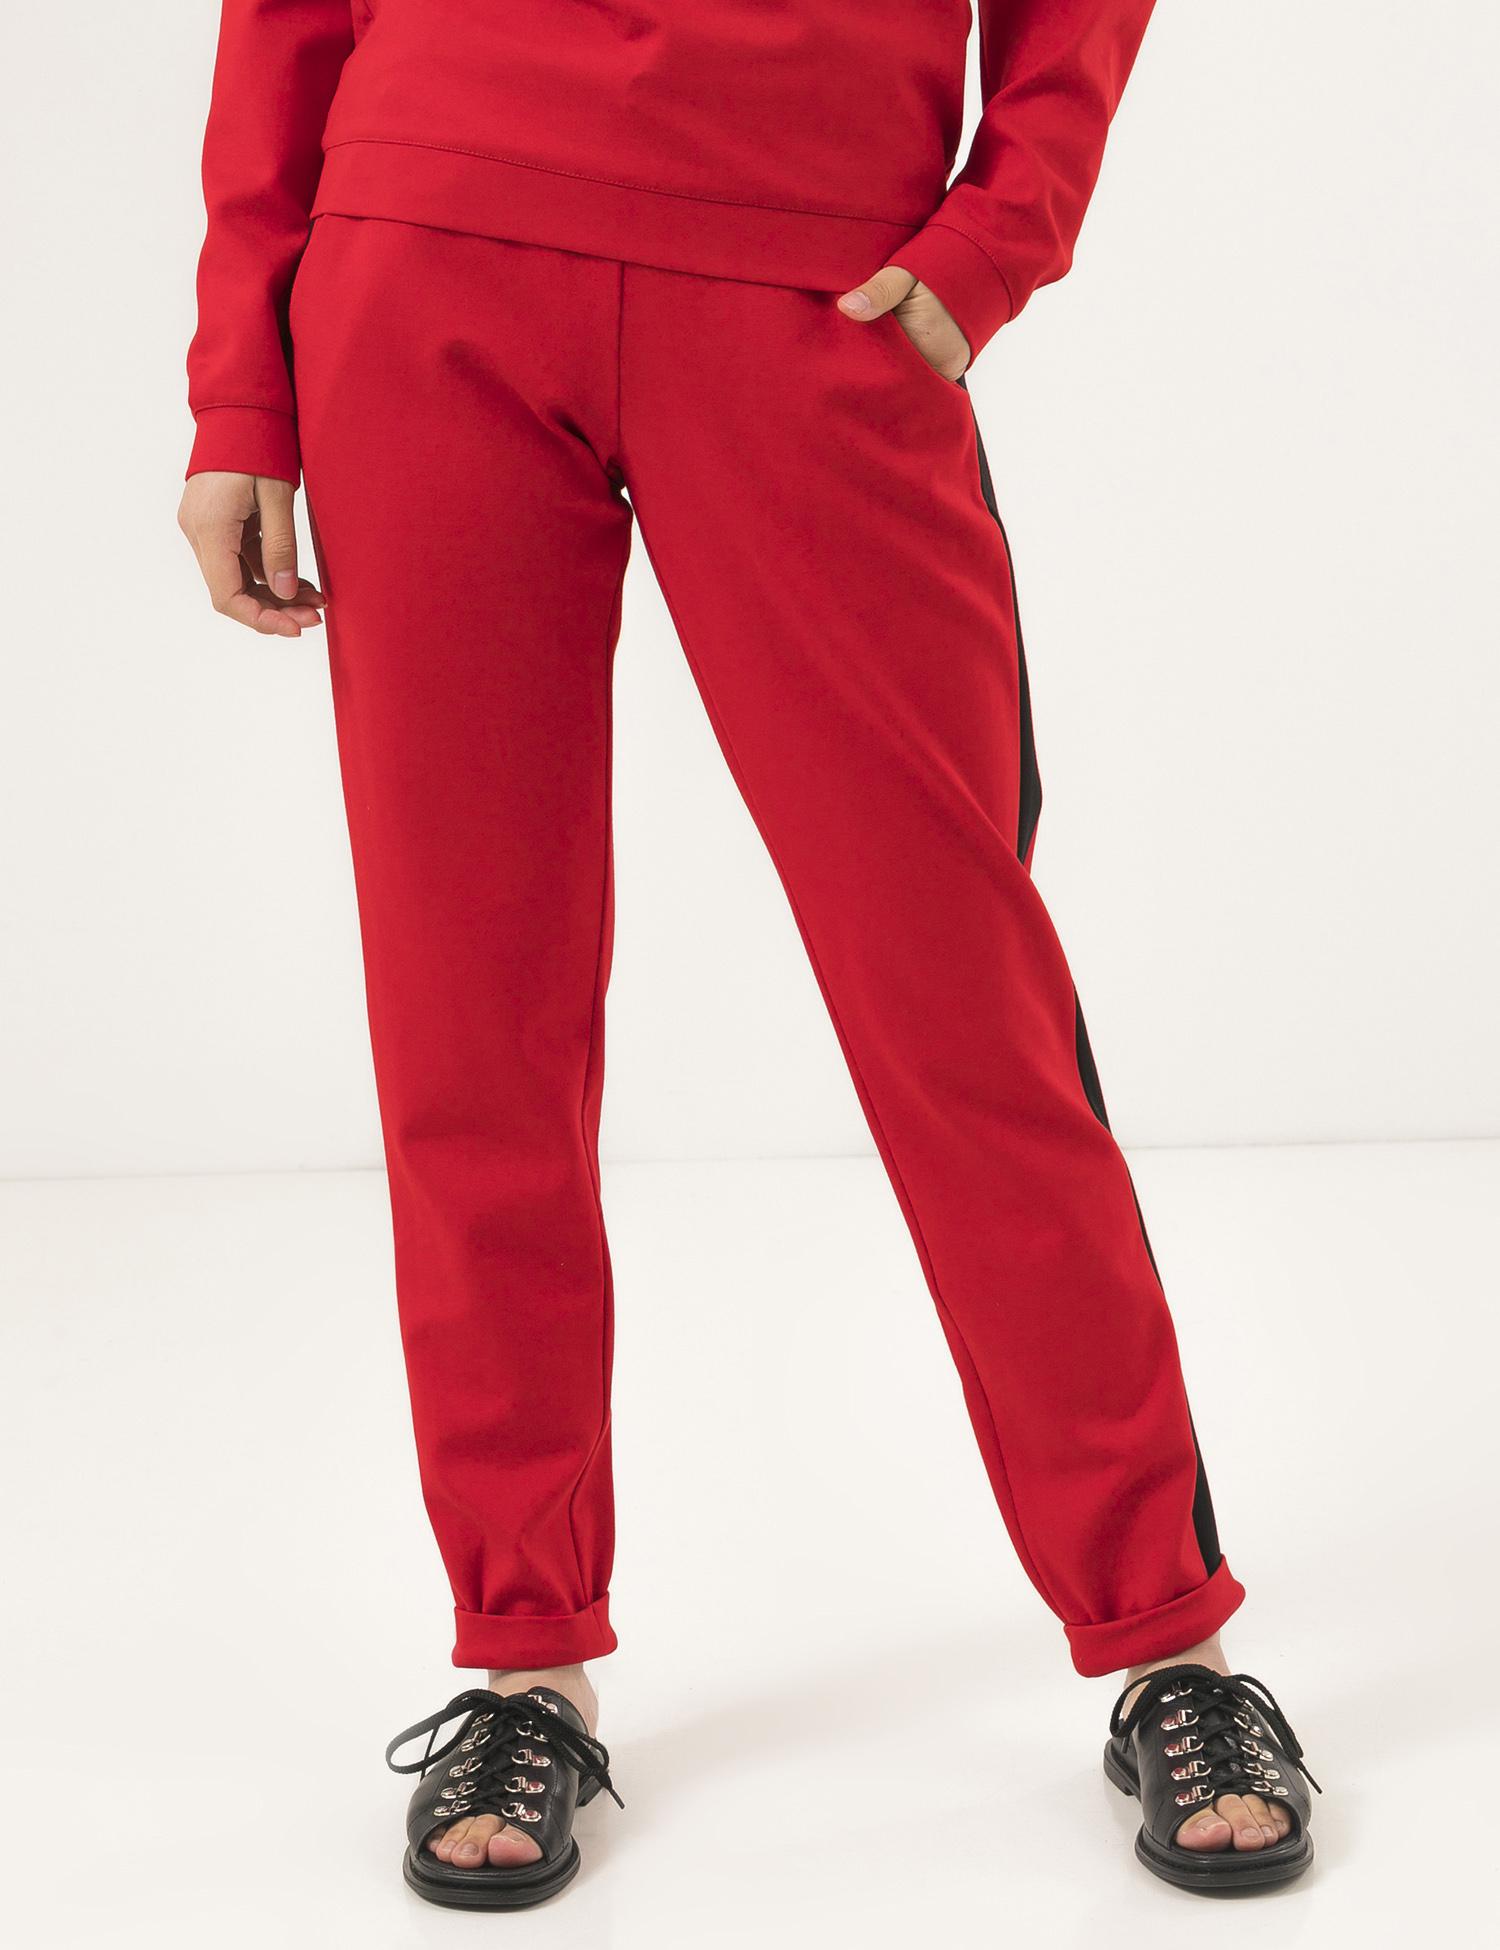 Картинка Жіночі червоні штани з лампасами